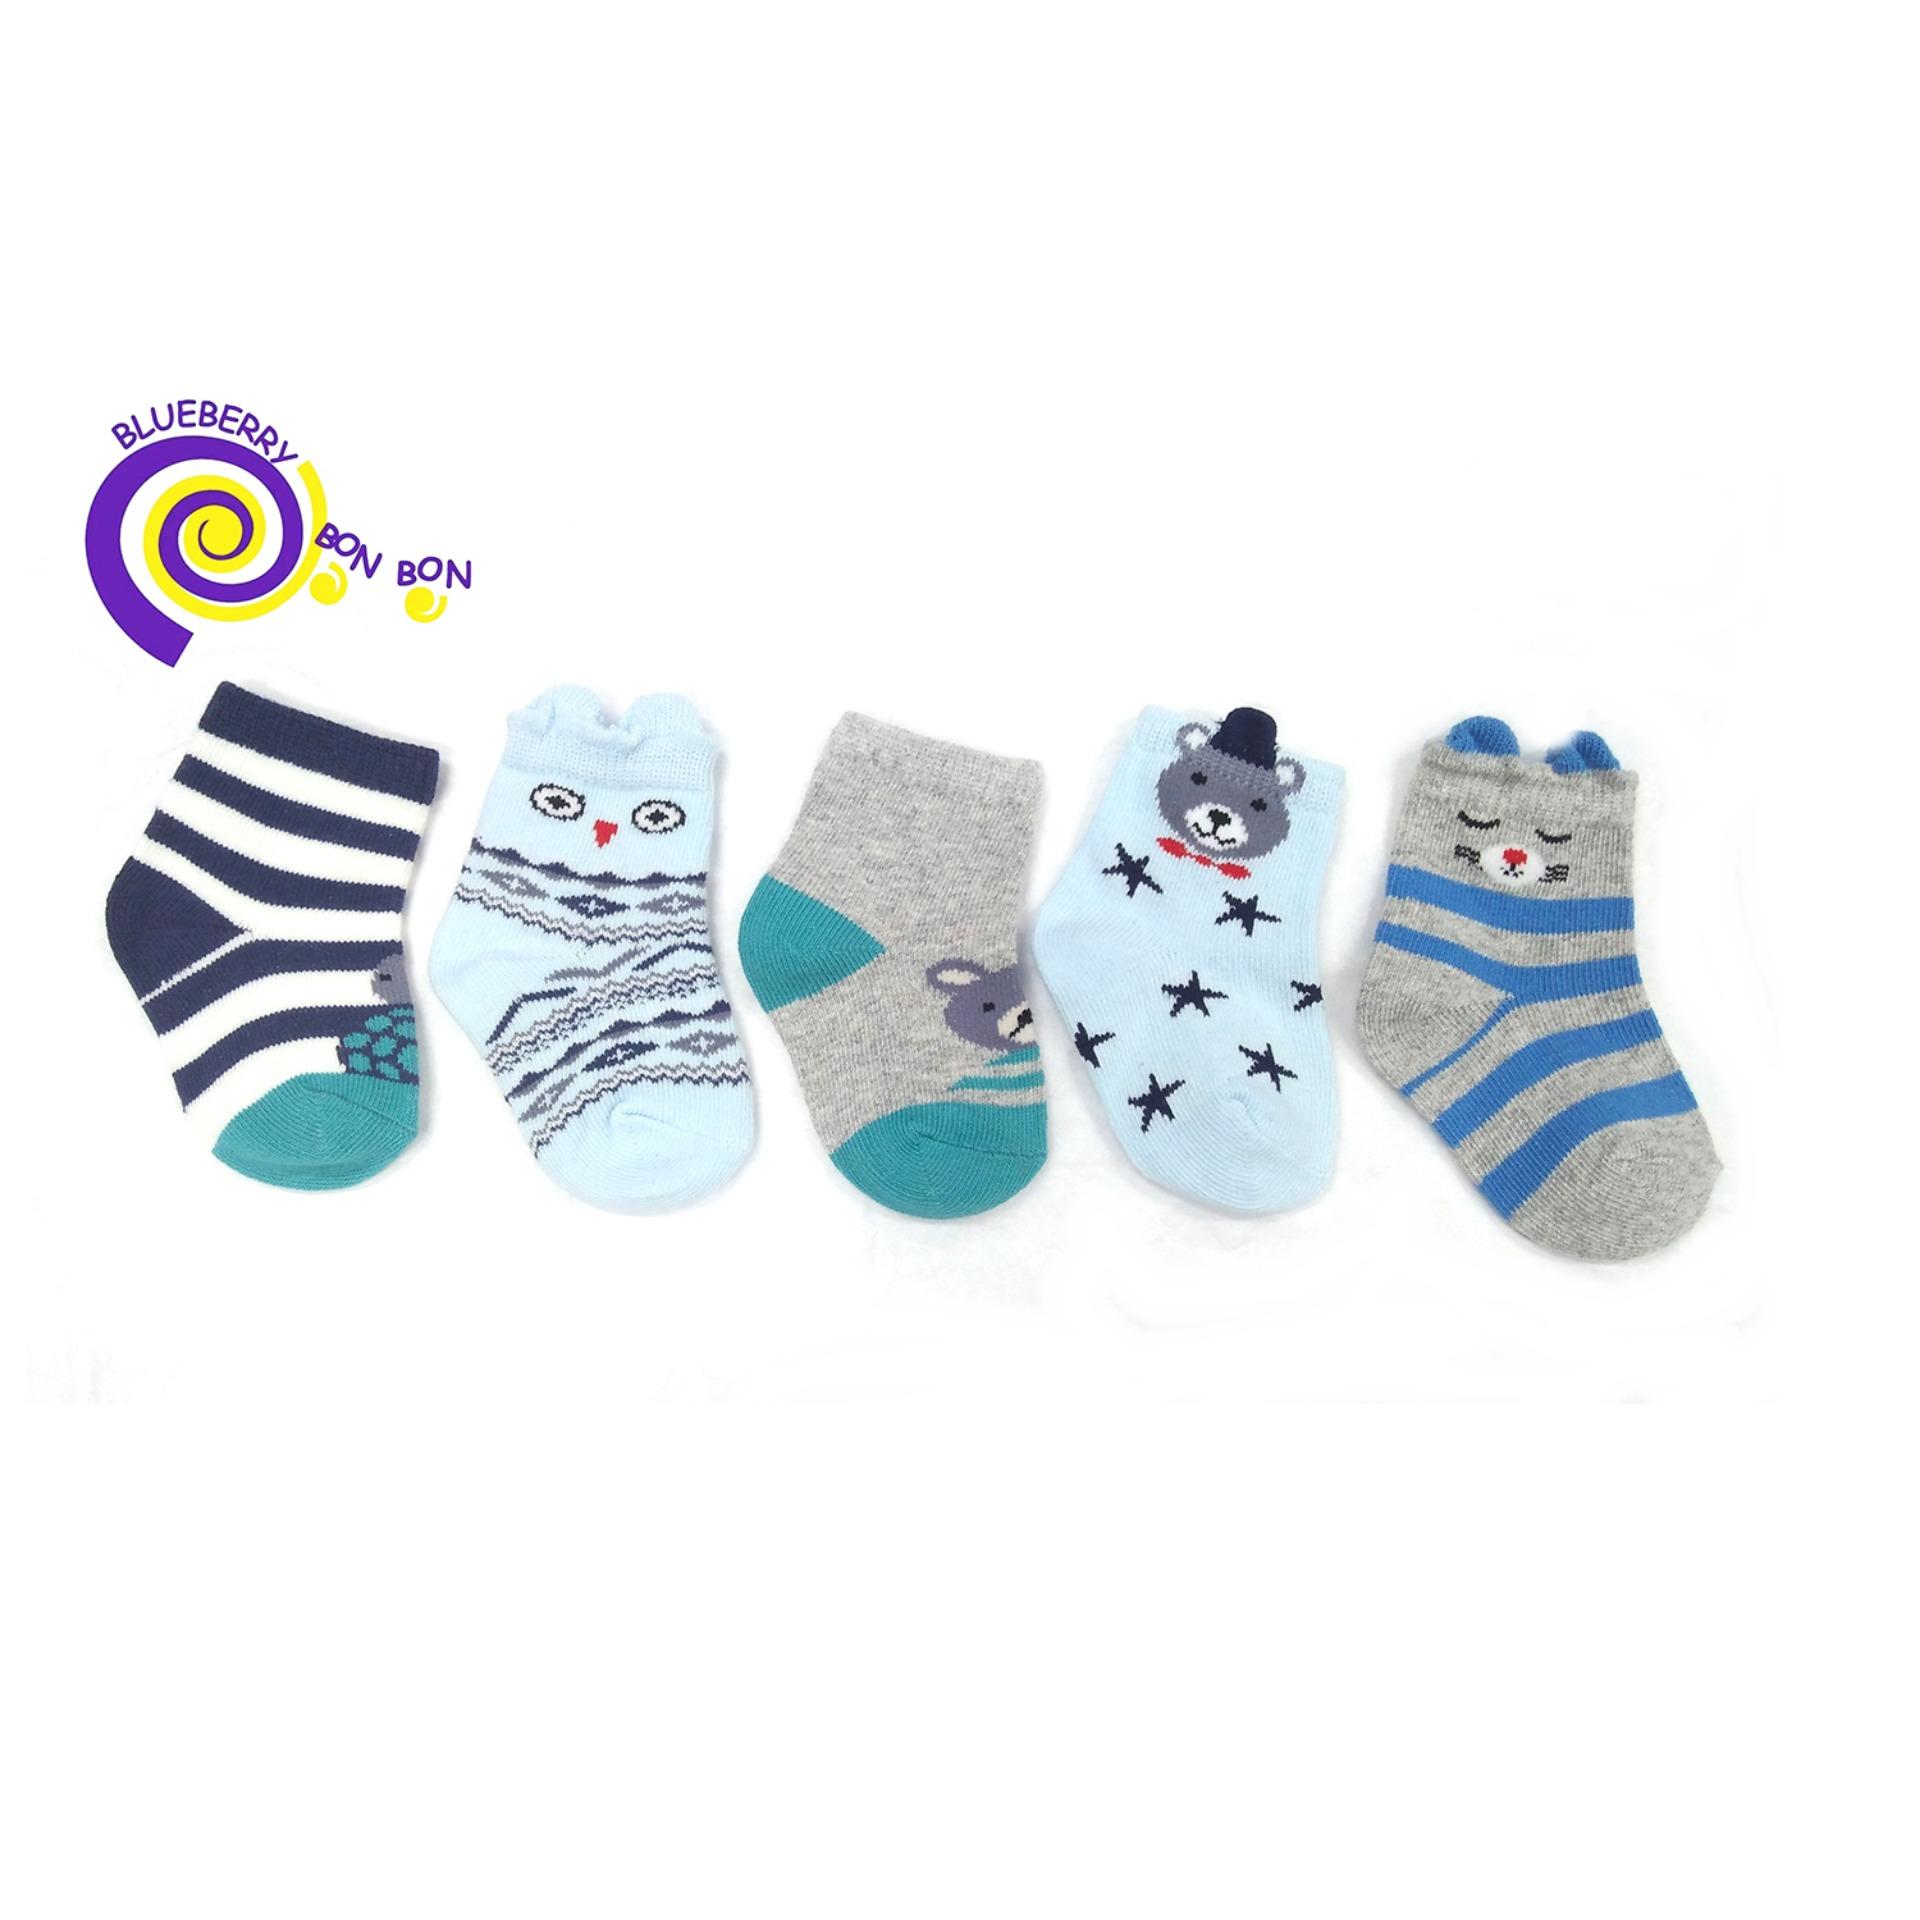 ถุงเท้าเด็ก ออร์แกนิคคอตตอน Sock Organic cotton 100% size 0-6,6-12,12-24 เดือน ลายแมว Brand : Blueberry Bon Bon (Colorful Organic cotton socks)